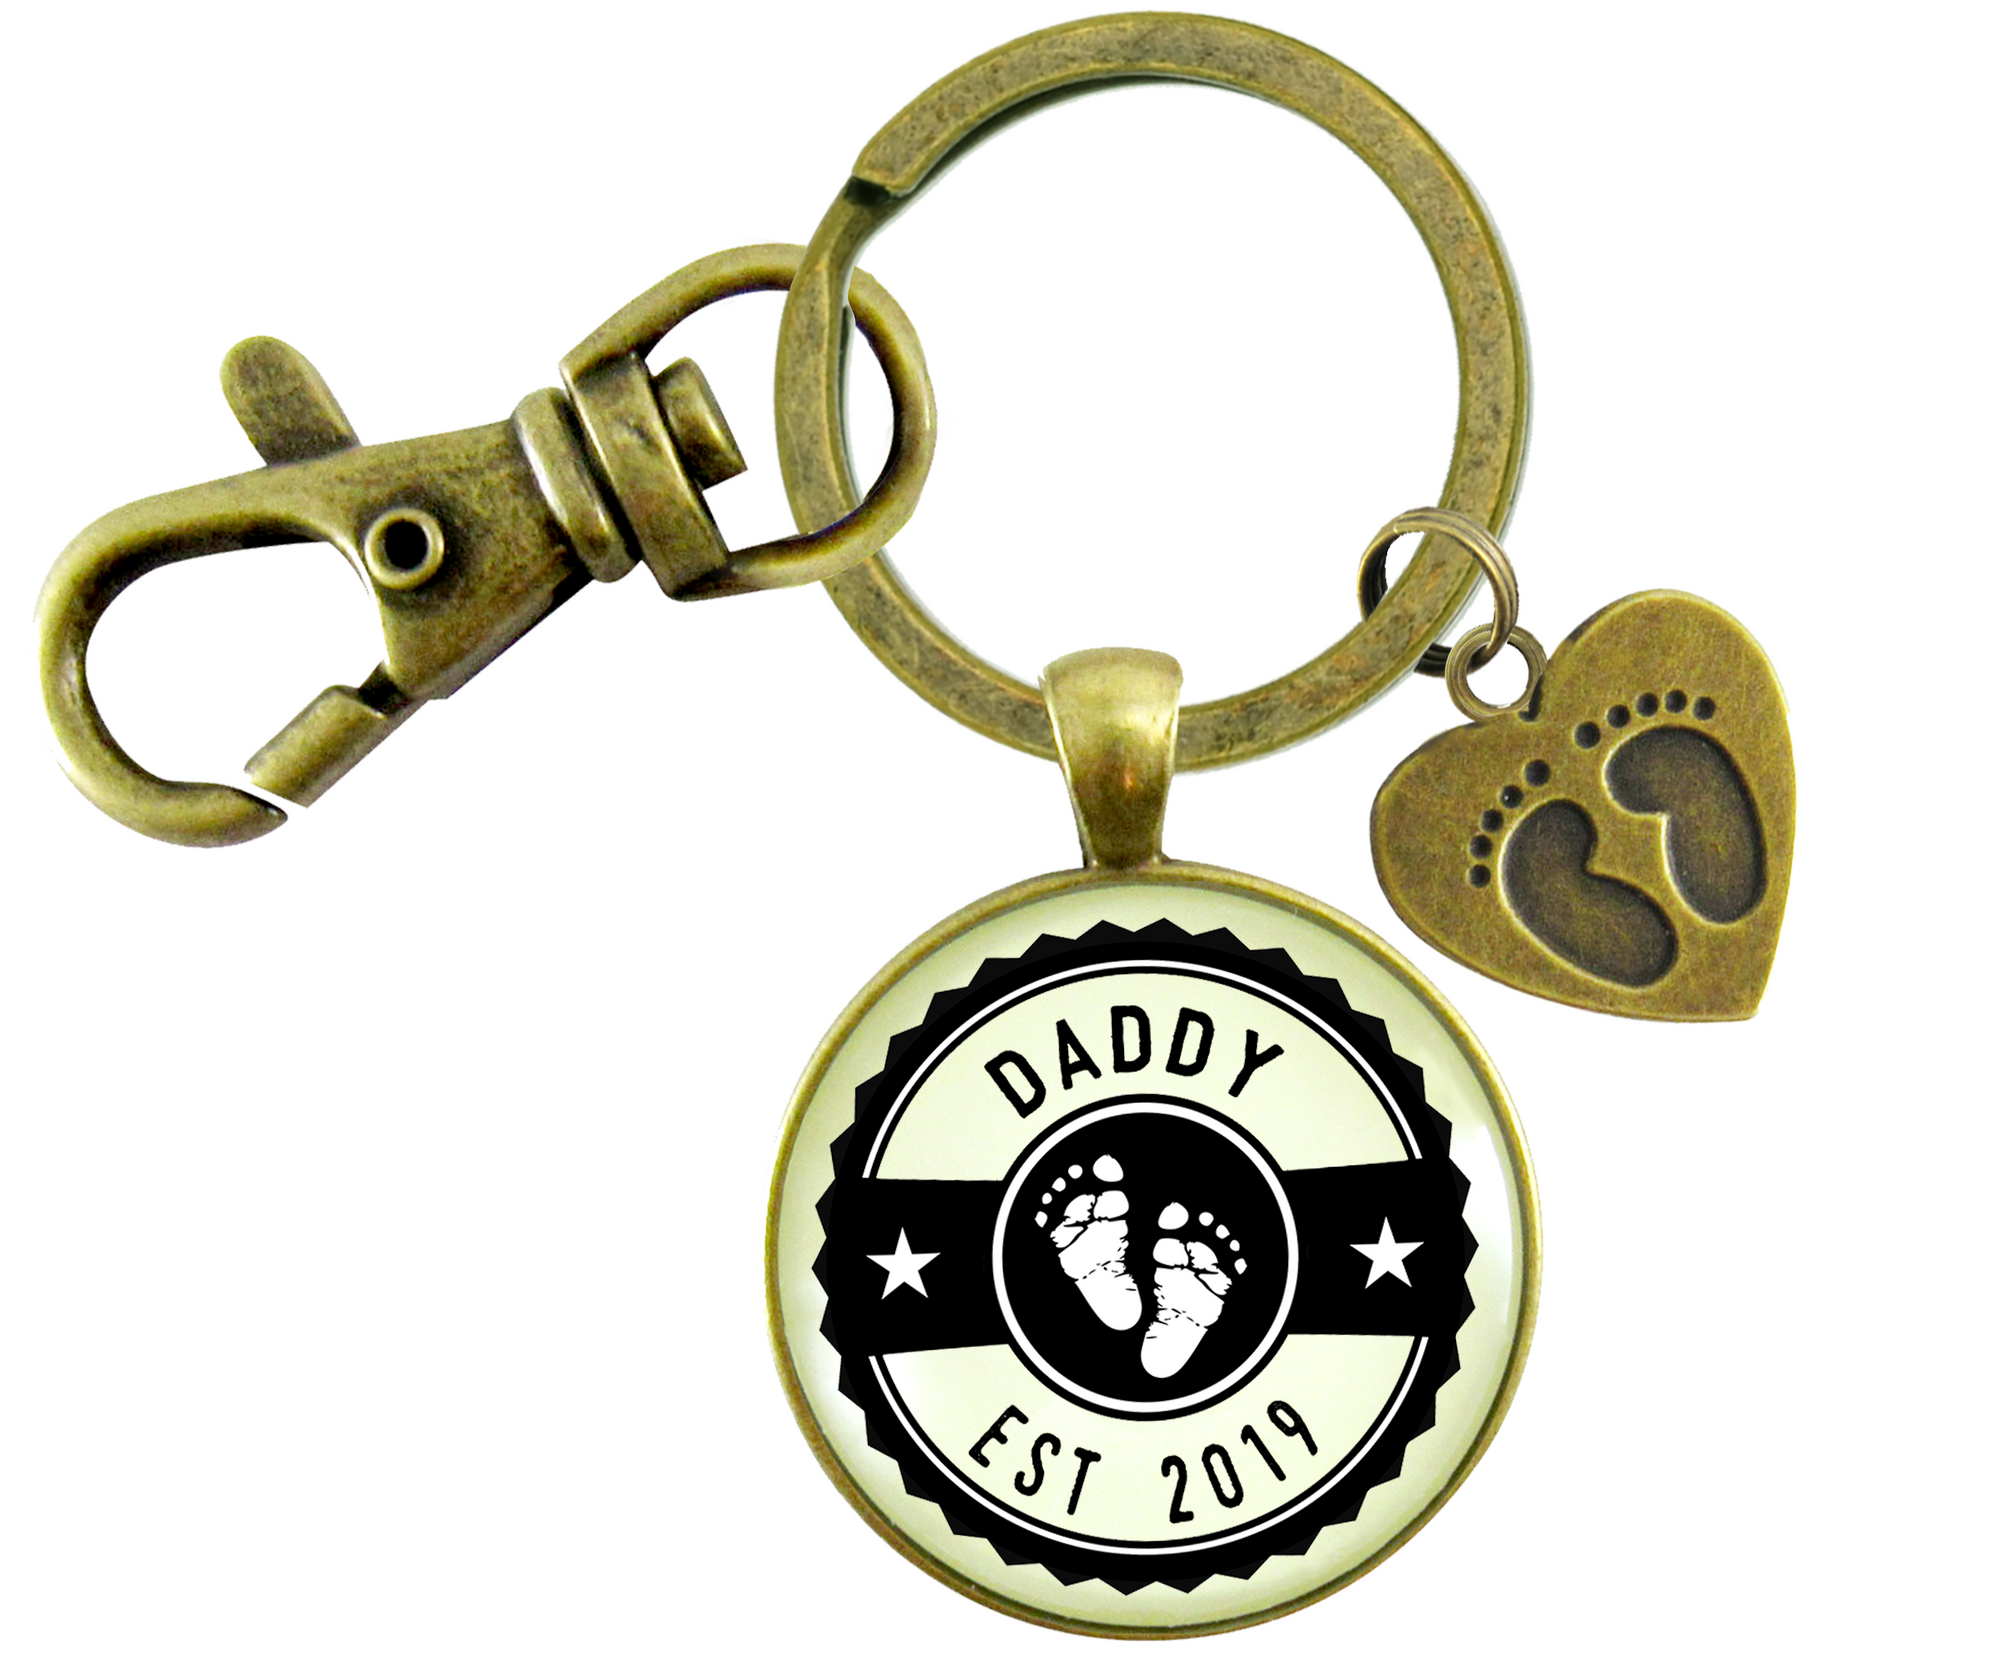 Daddy Established 2019 Keychain New Dad First Father's DayKeychain Baby Feet Charm - Gutsy Goodness Handmade Jewelry